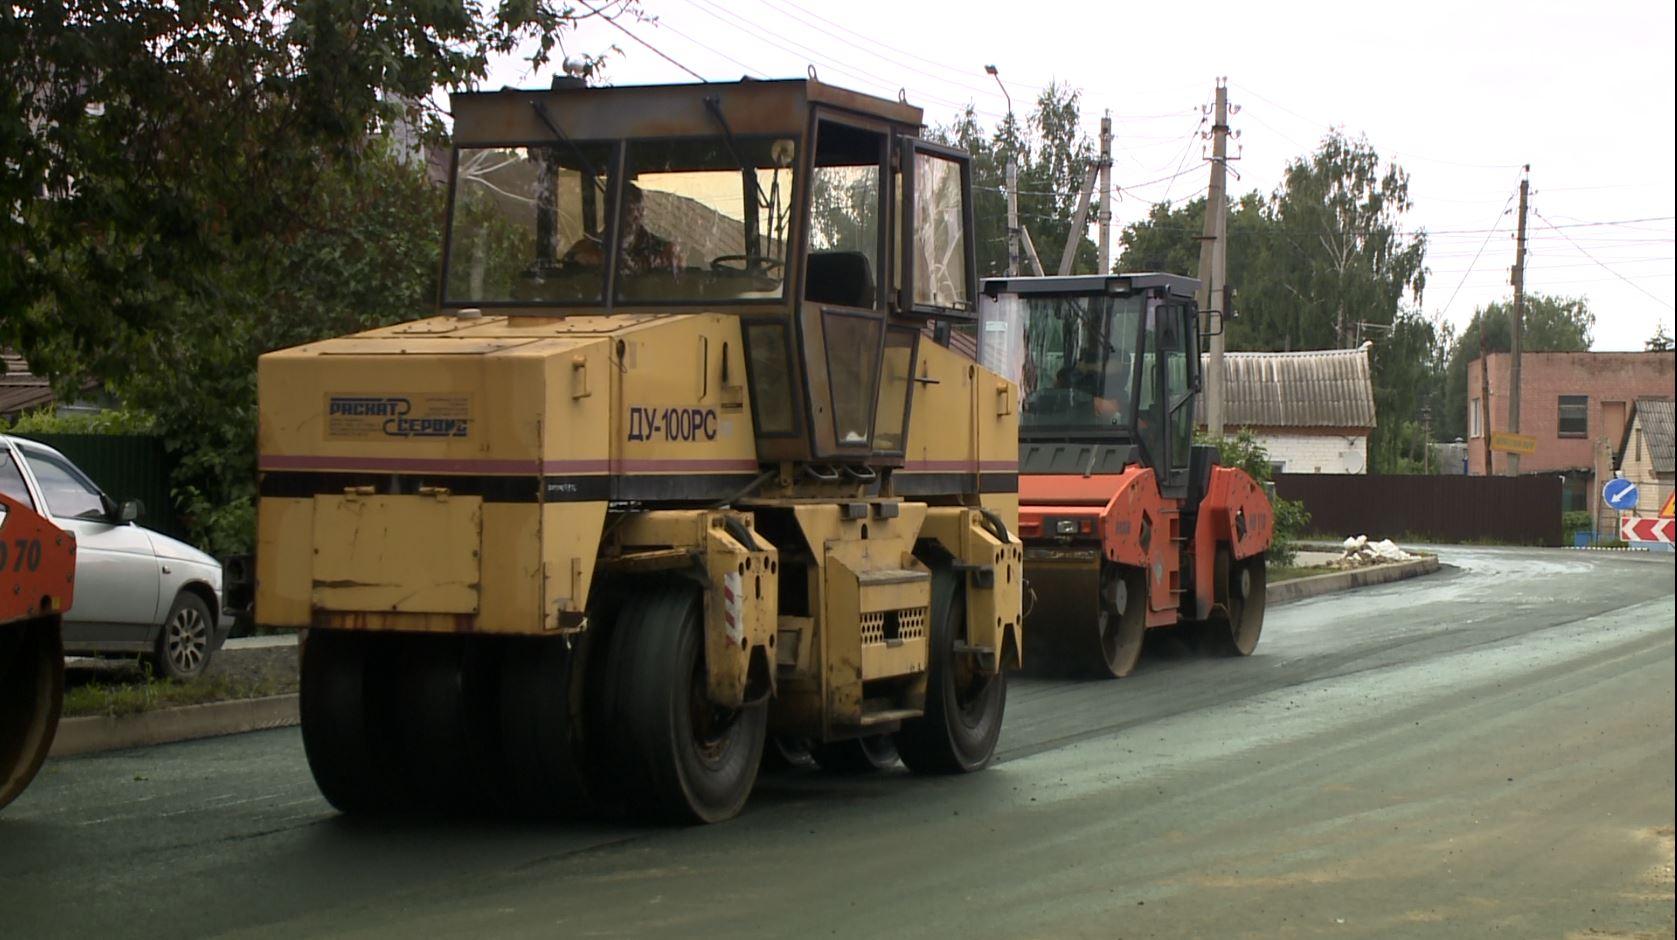 До 5 июля в Орловской области определят подрядчика на ремонт трех участков дорог за 300 млн. рублей